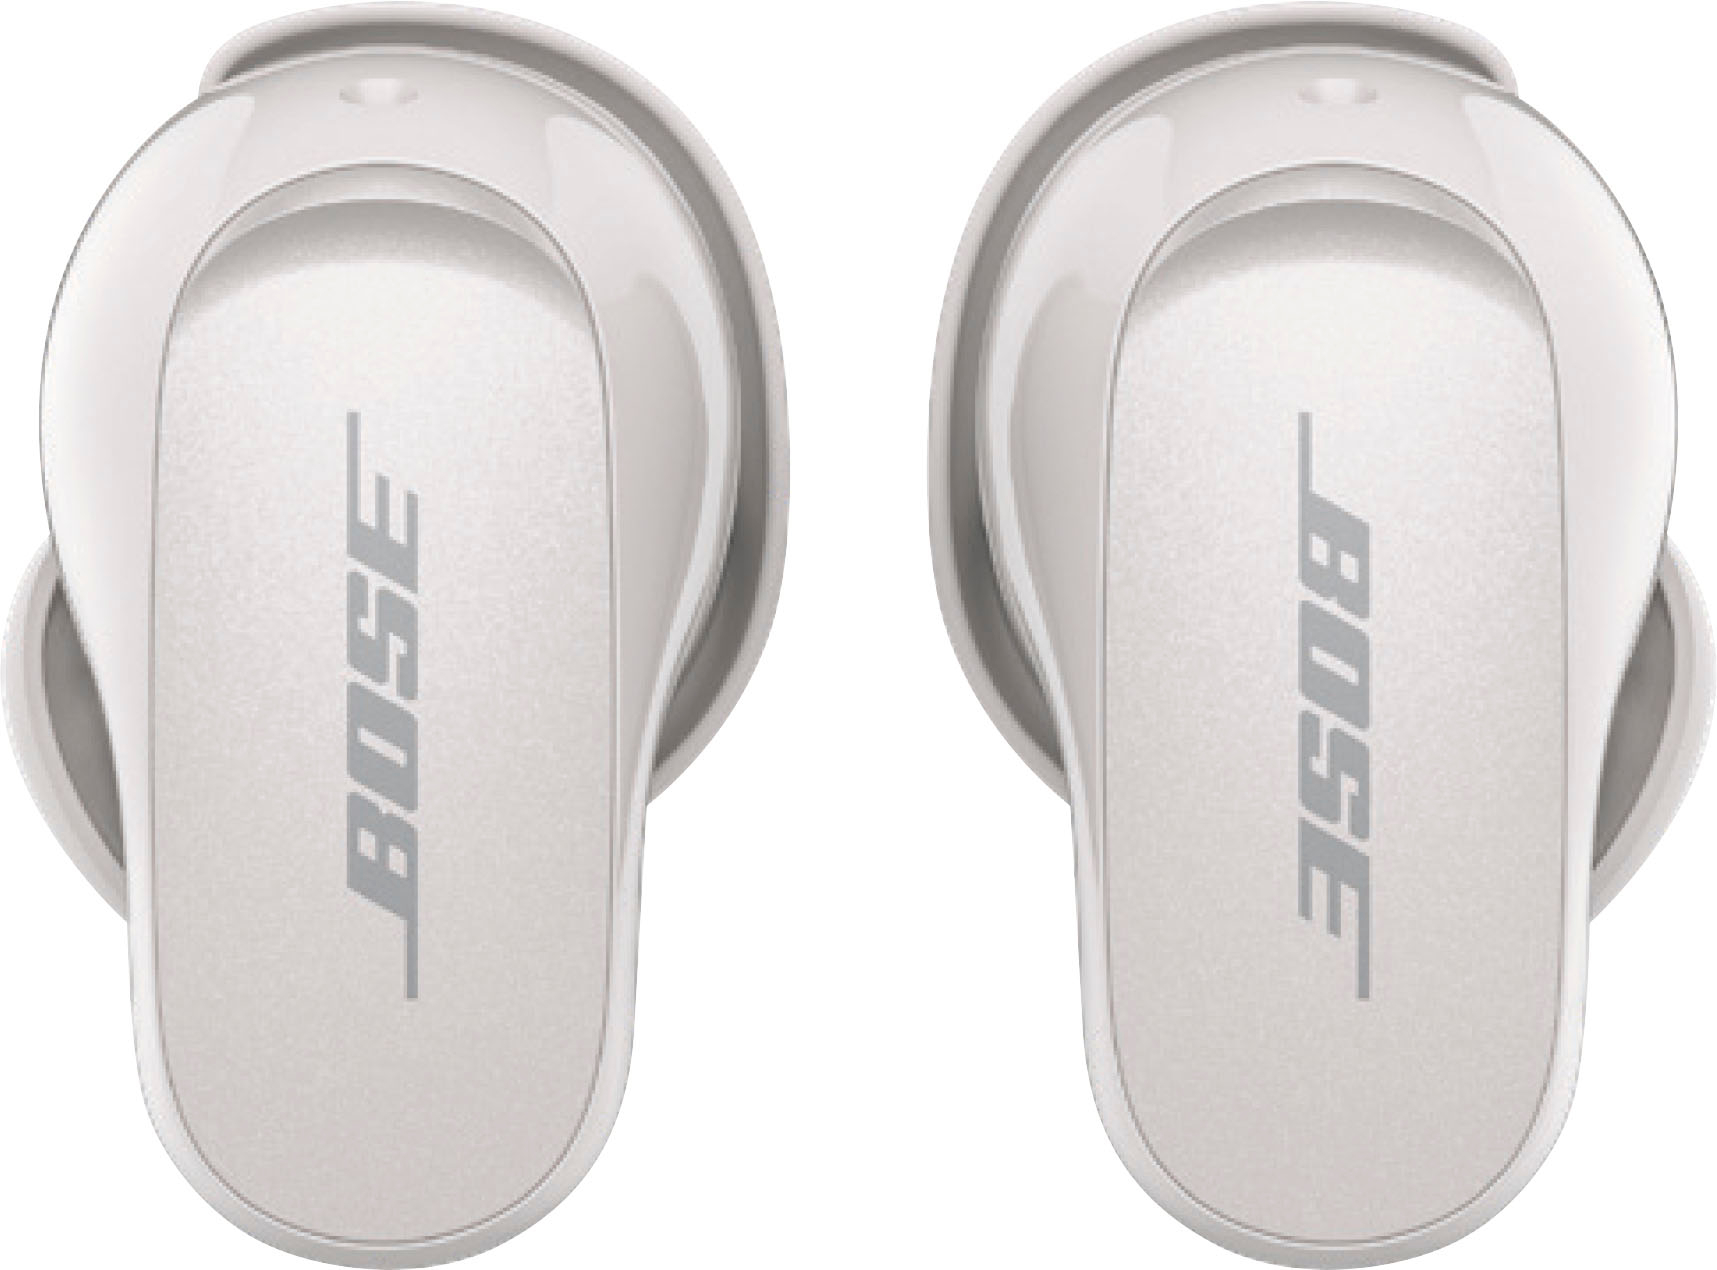 Bose QuietComfort Earbuds II True Wireless Noise Cancelling In-Ear  Headphones Soapstone 870730-0020 - Best Buy